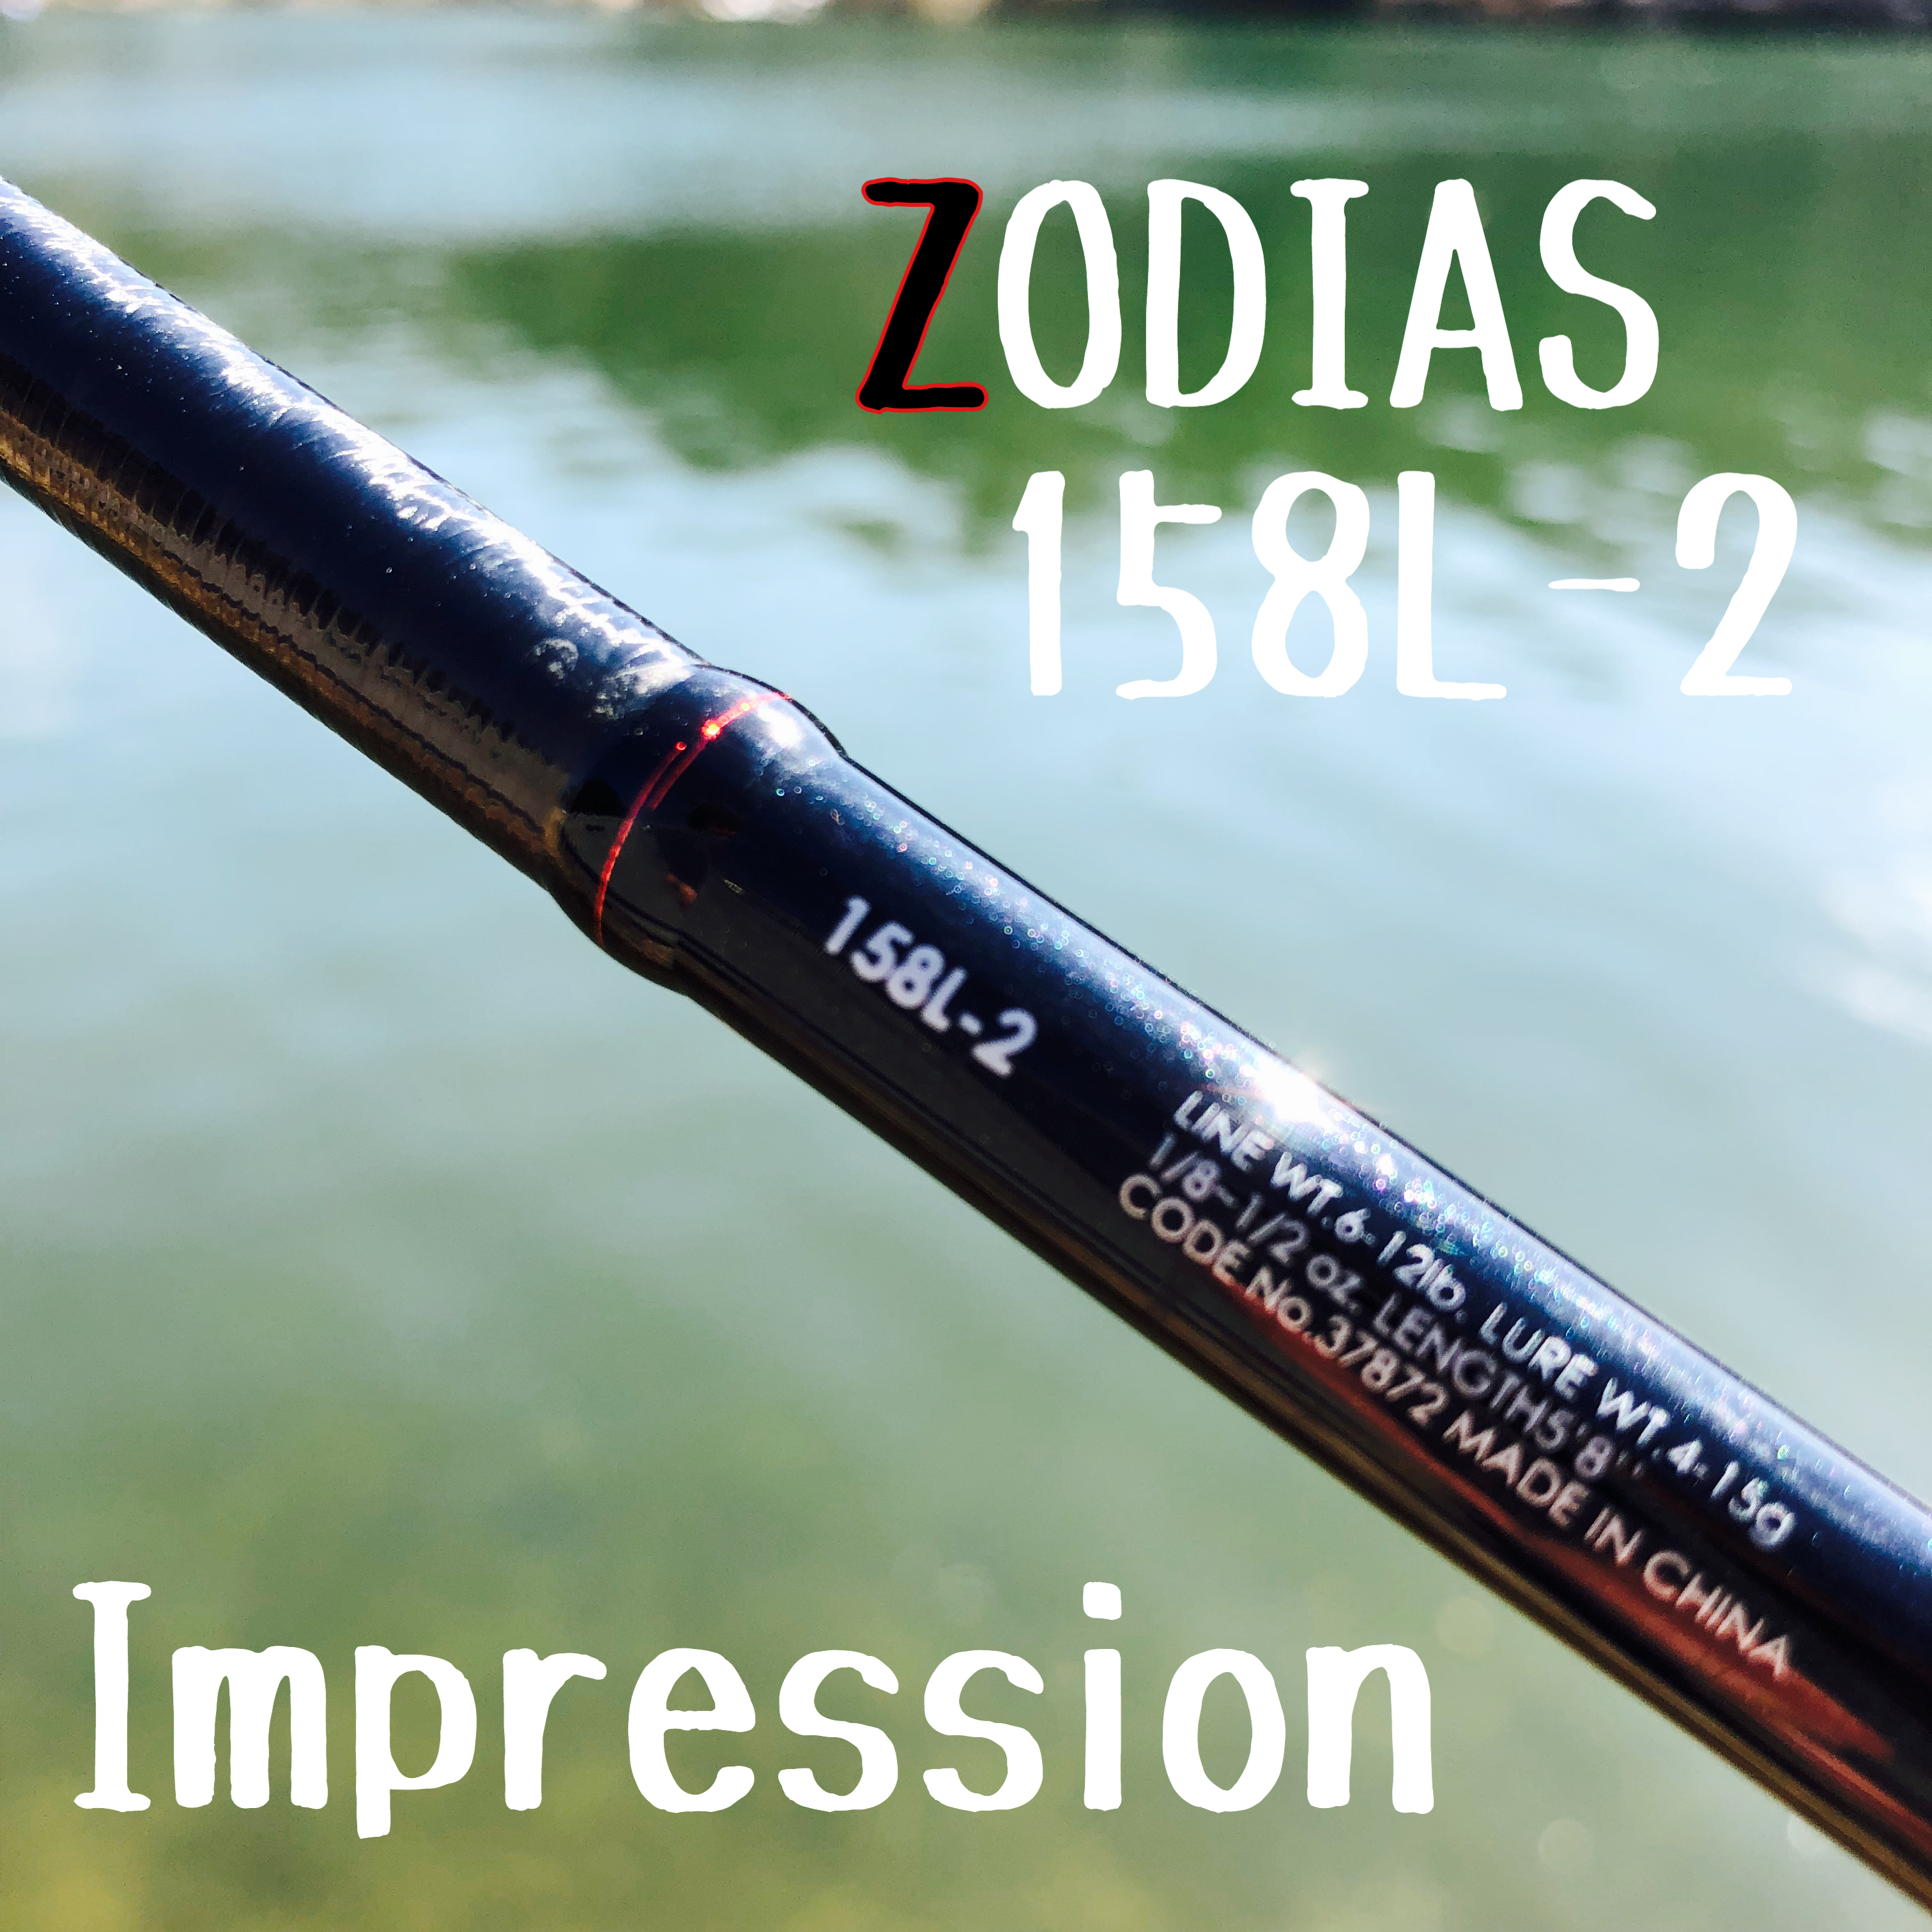 Zodias ライトアクション ショート 158l 2のインプレです